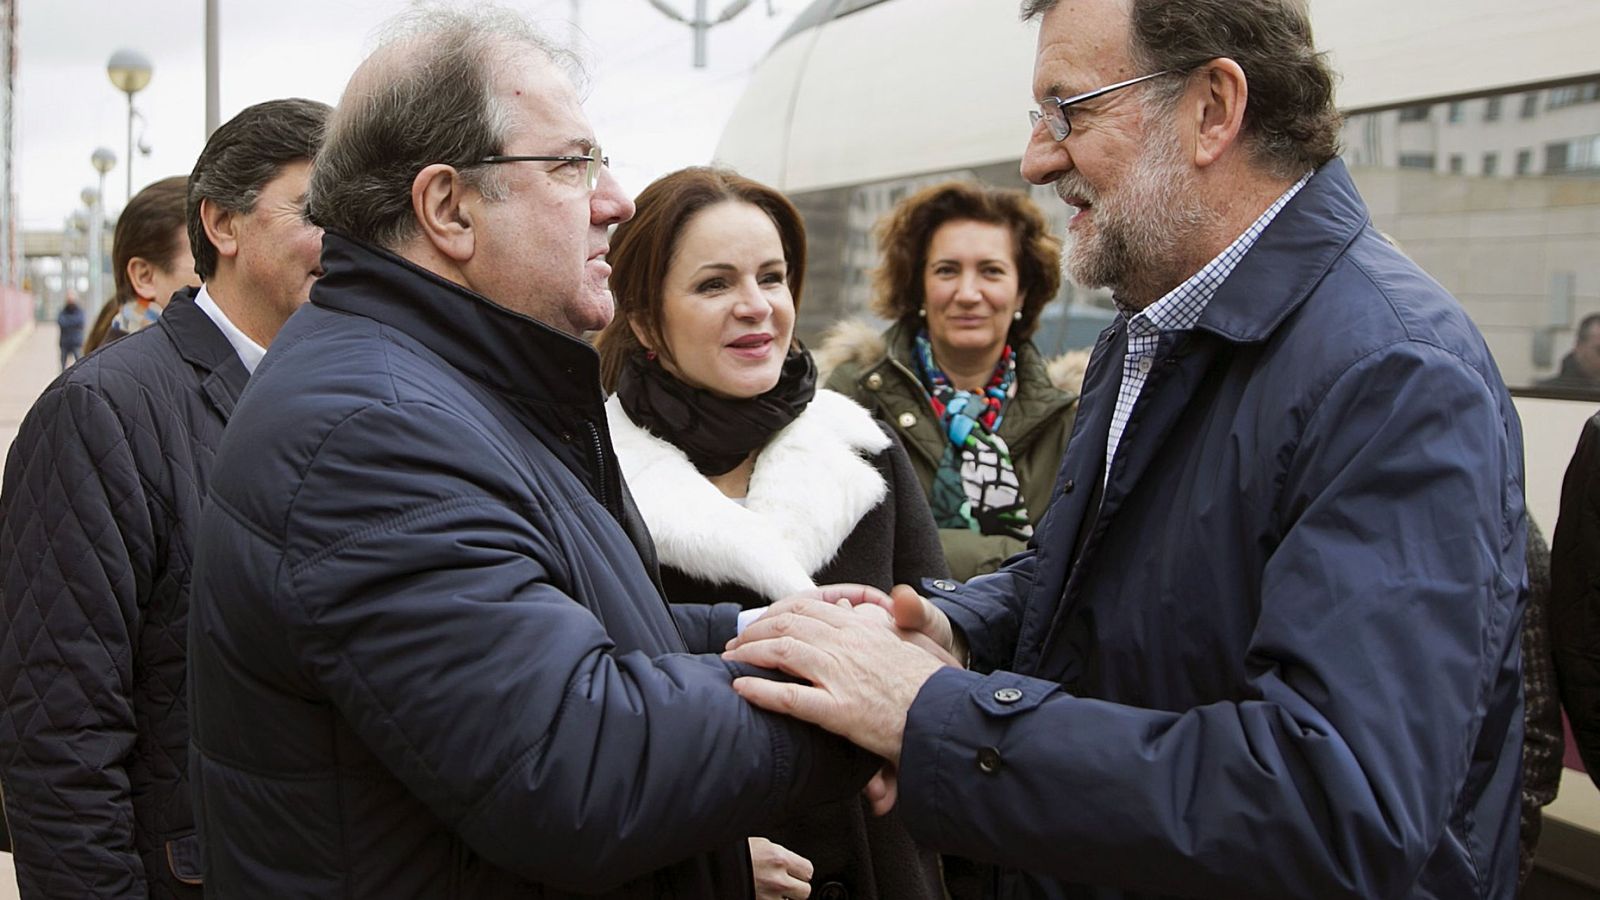 Foto: El presidente de la Junta de Castilla y León, Juan Vicente Herrera, junto al presidente del Gobierno en funciones, Mariano Rajoy, en un acto en Salamanca. (EFE)